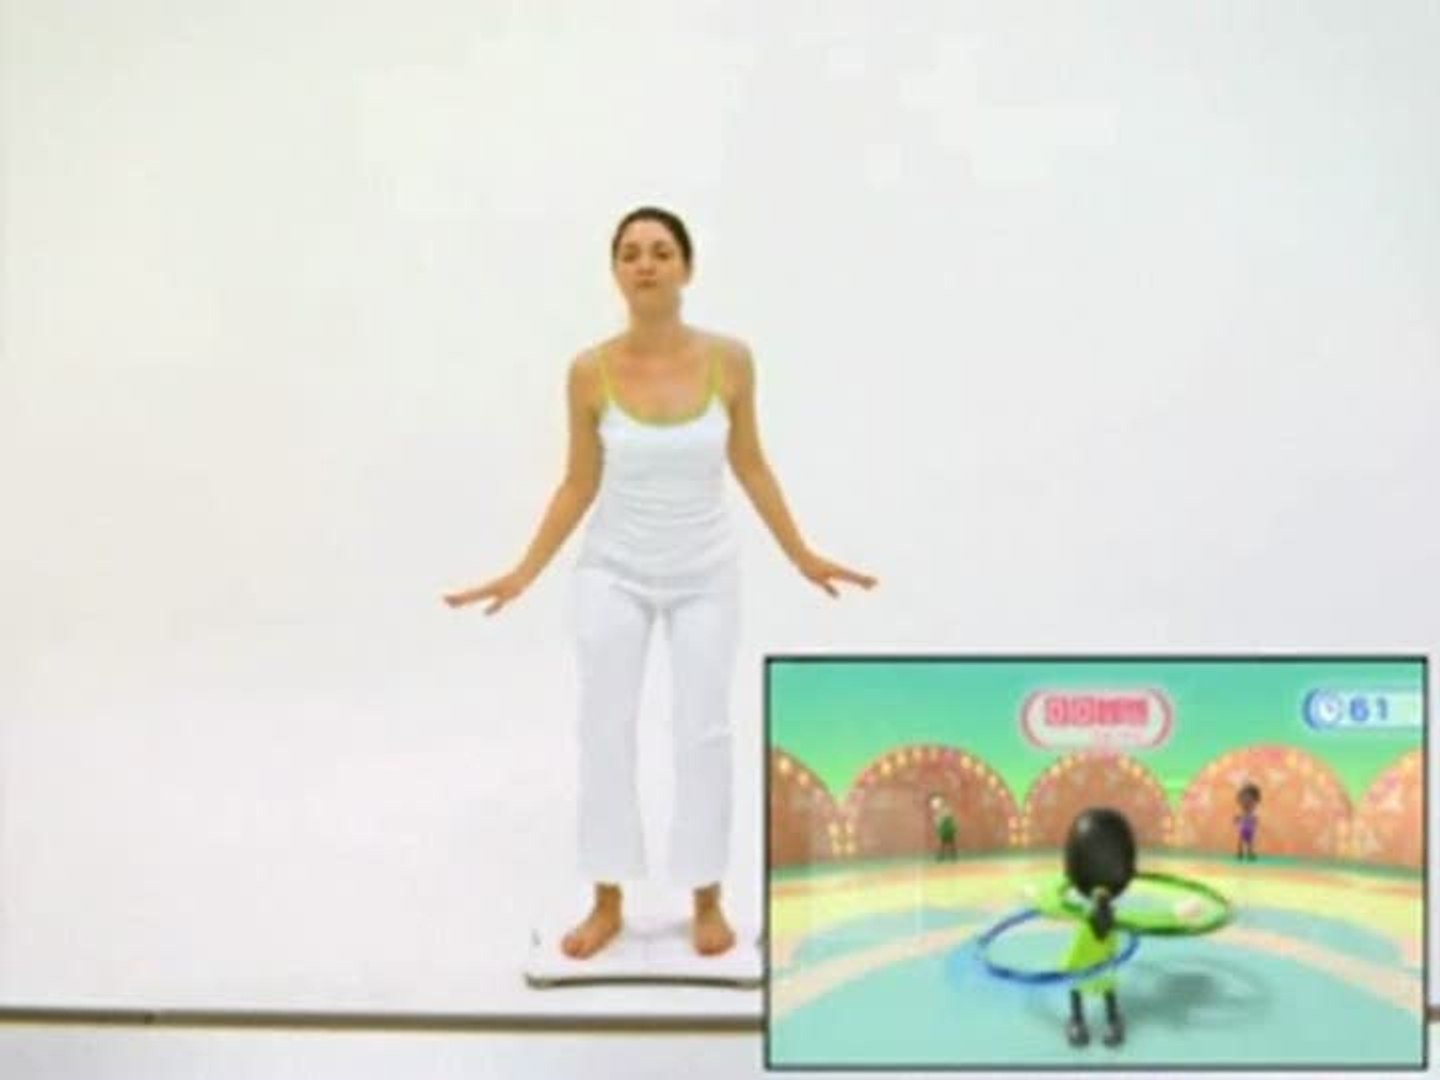 veteraan En team repetitie Wii Fit : Hula-Hoop, le retour - Vidéo Dailymotion